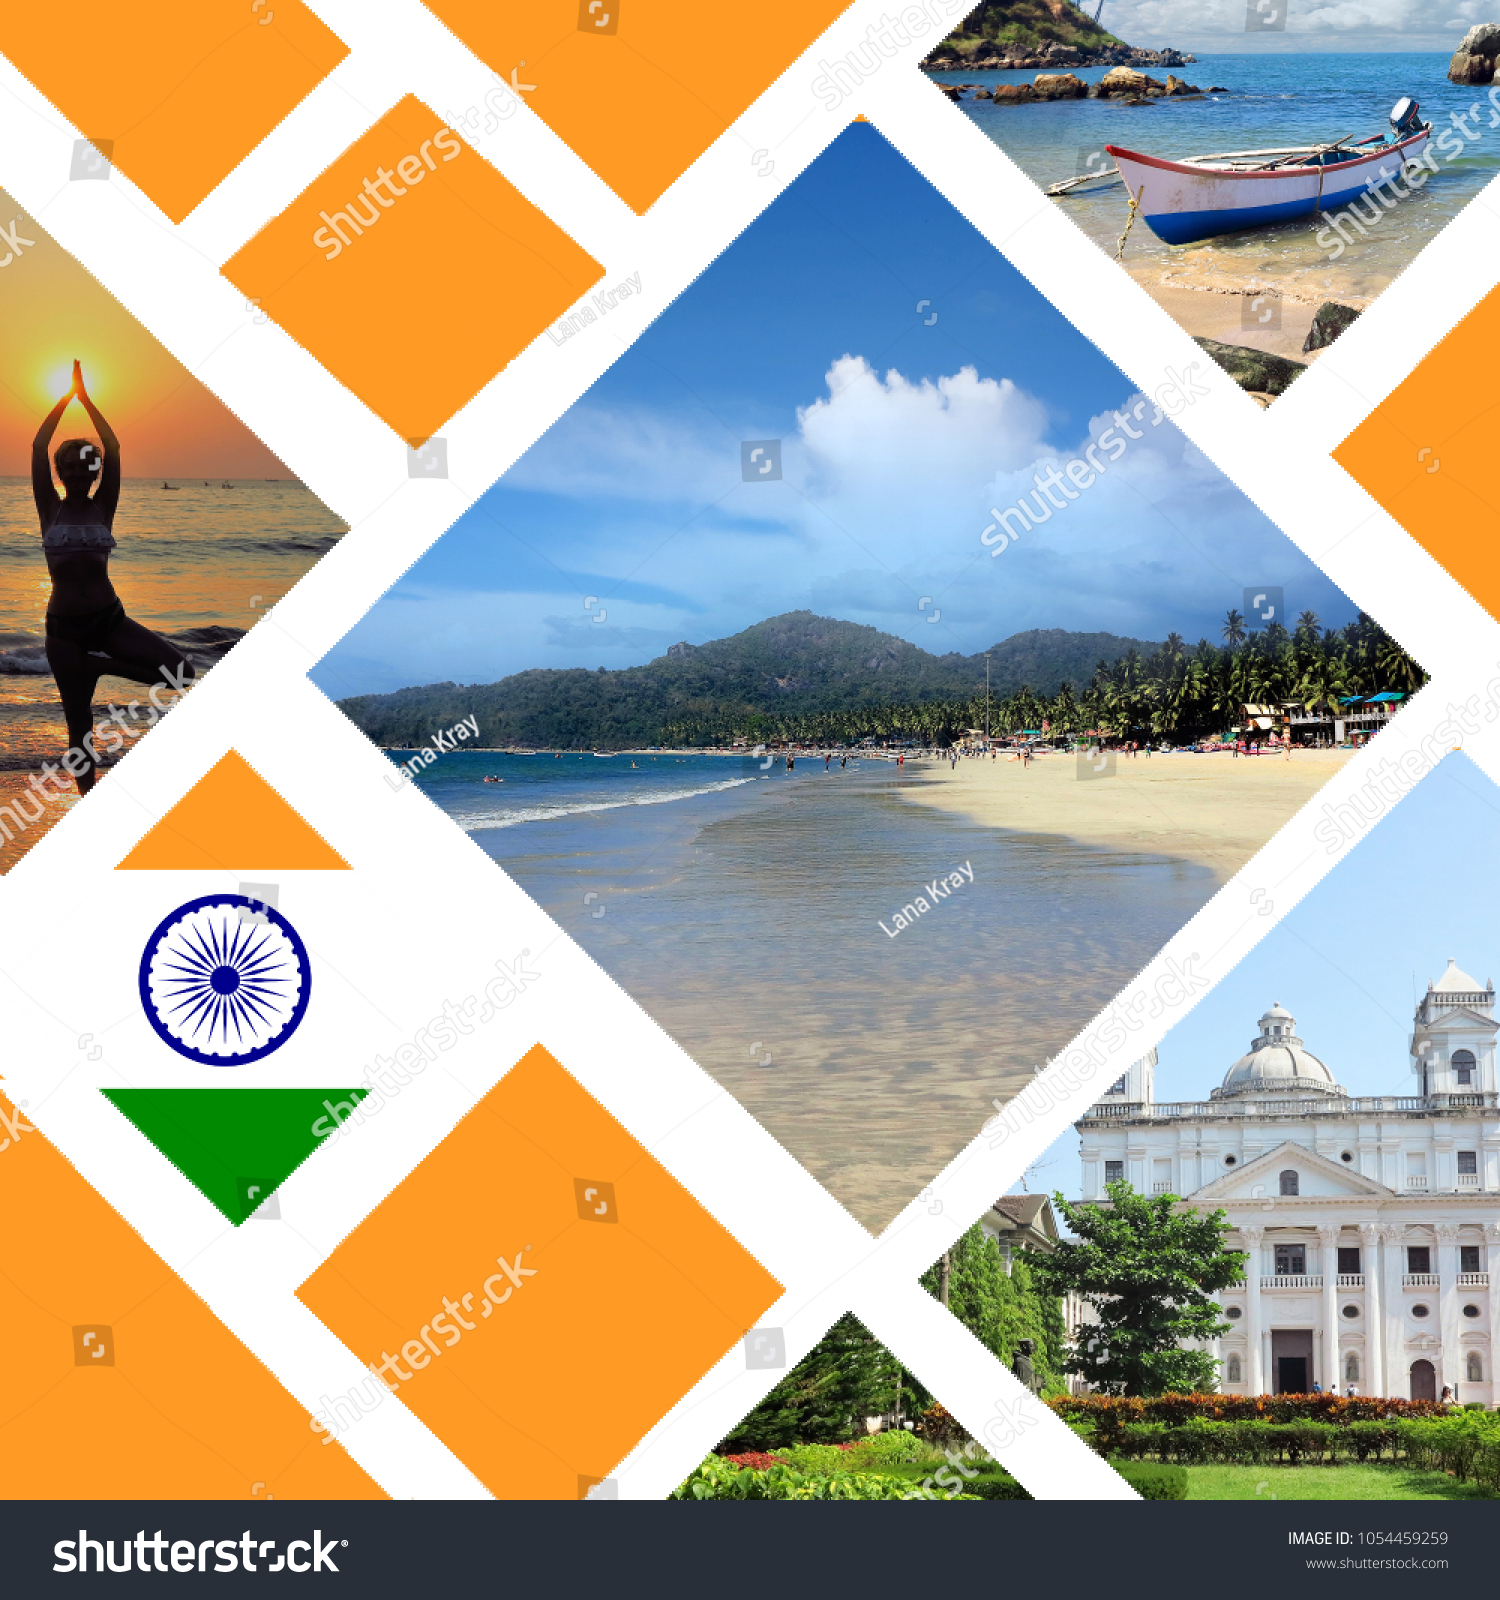 Goa Tourist Places Collage